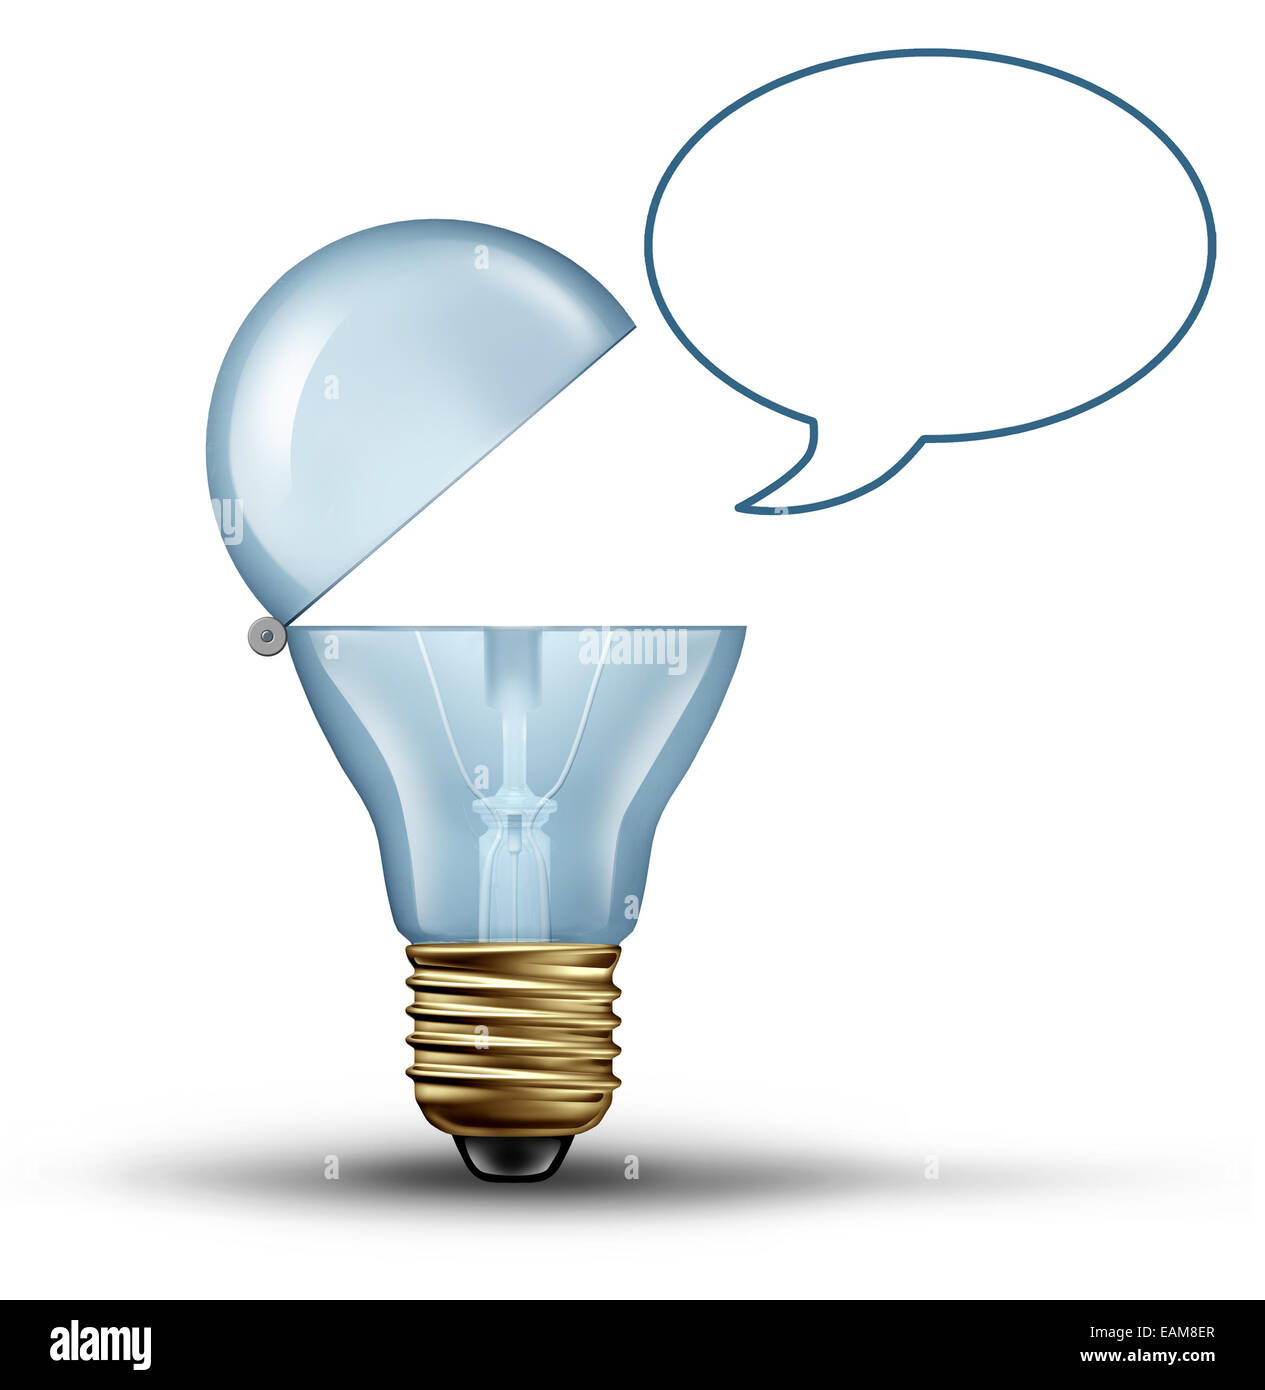 Idee-Kommunikations-Konzept als eine Glühbirne mit offenem Mund Wth eine leere Sprechblase als kreative Symbol für Kommunikation zu sprechen, die innovatives Denken durch den Einsatz von marketing und social Media auf einem weißen Hintergrund. Stockfoto